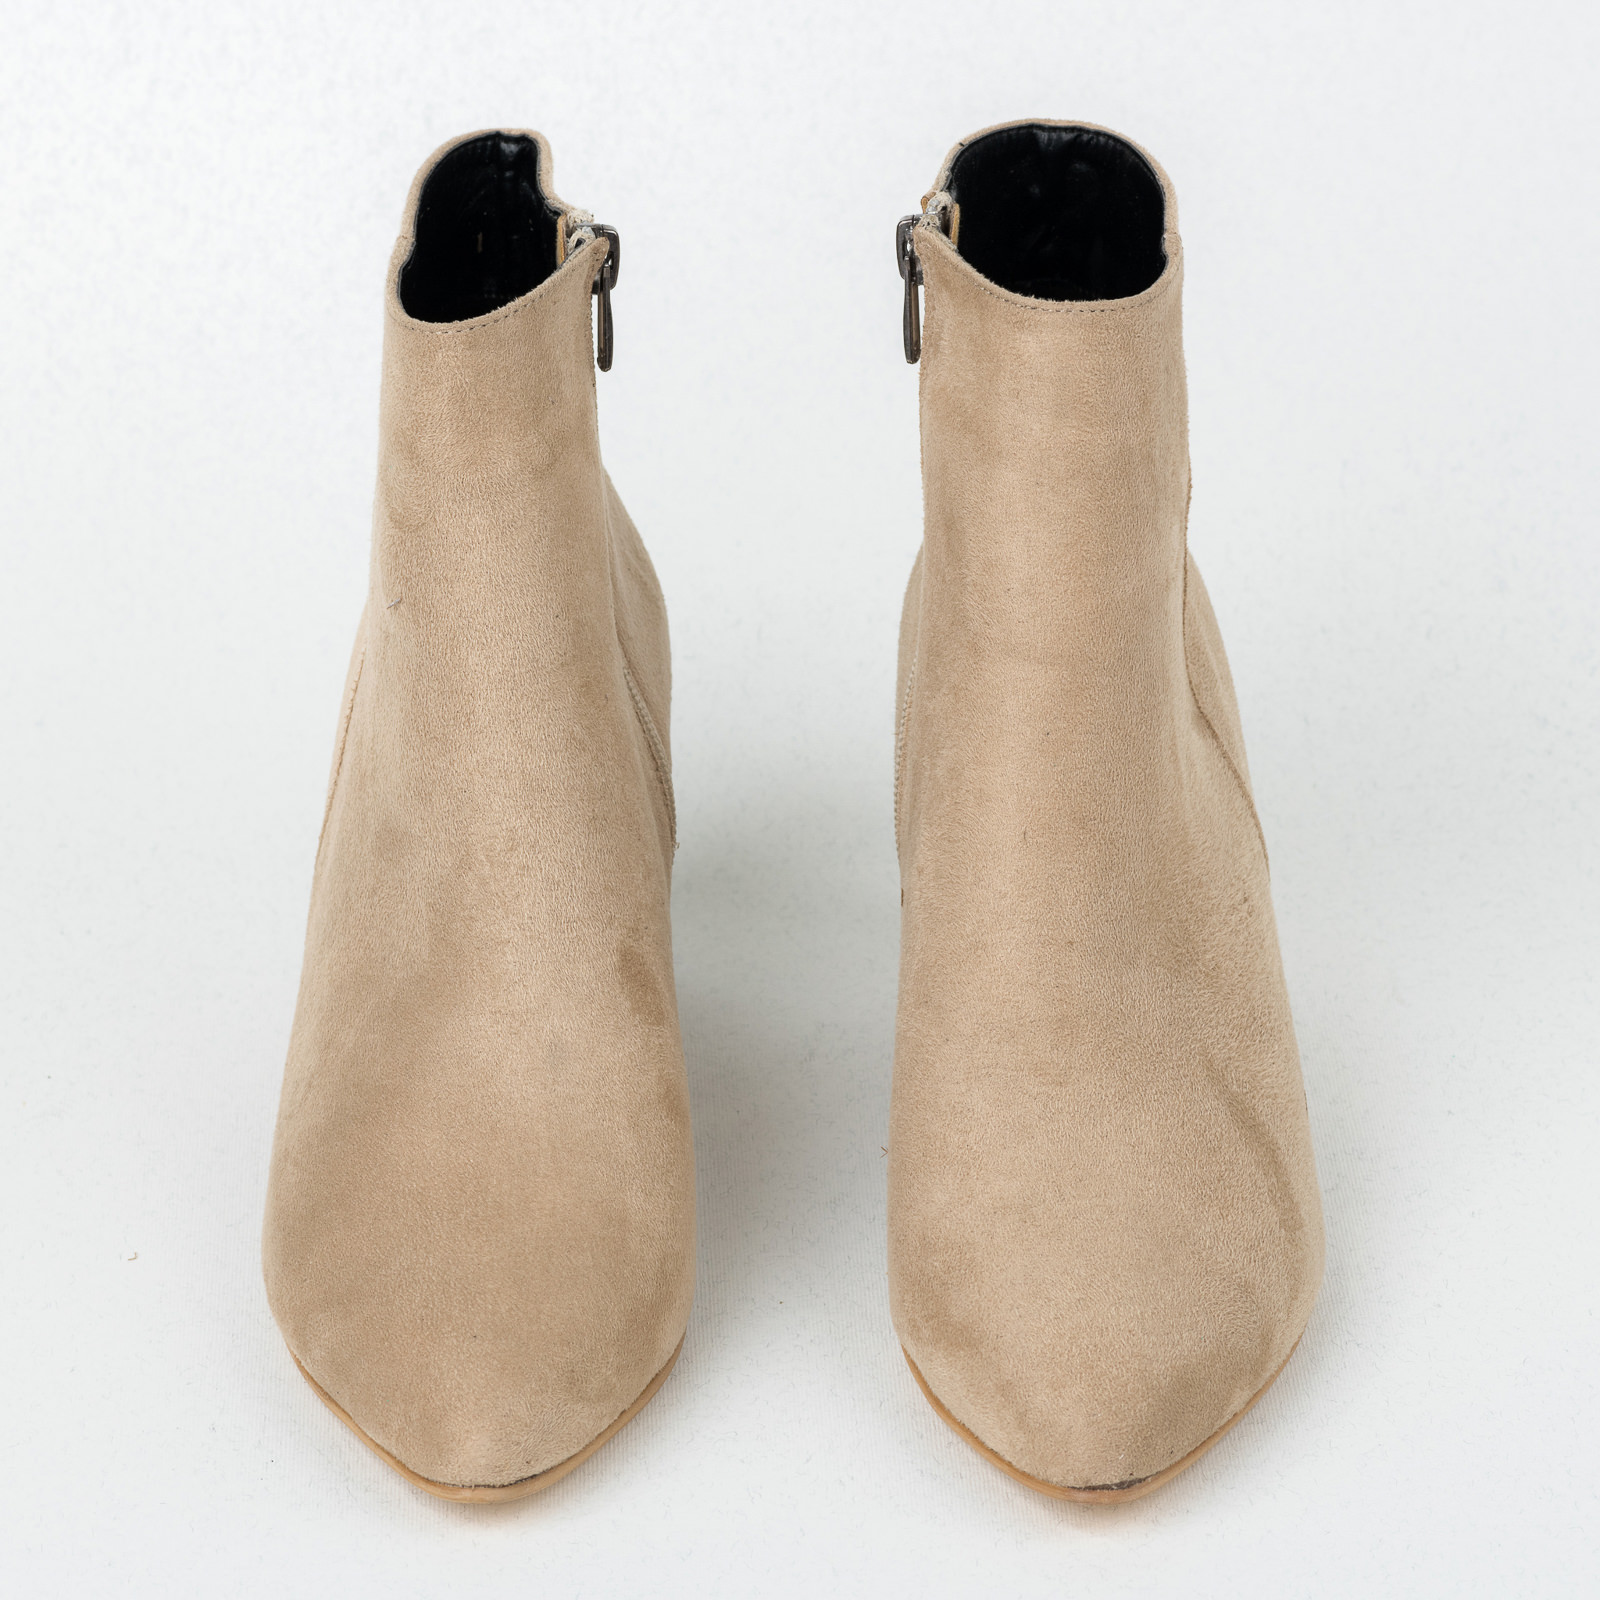 Women ankle boots B529 - BEIGE